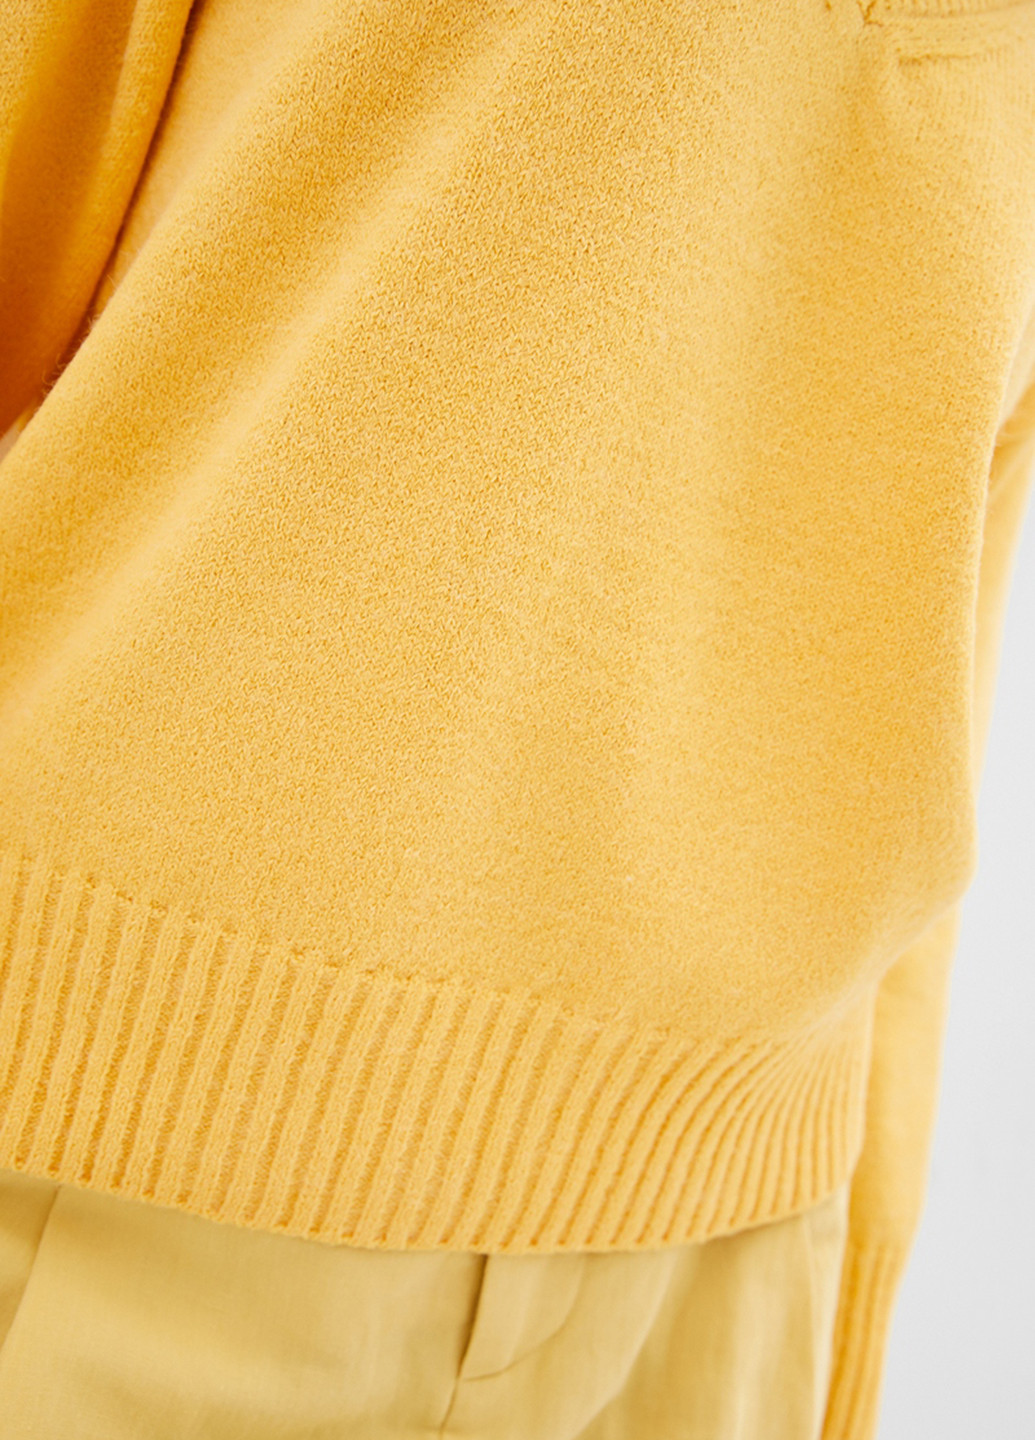 Жовтий демісезонний пуловер пуловер Sewel